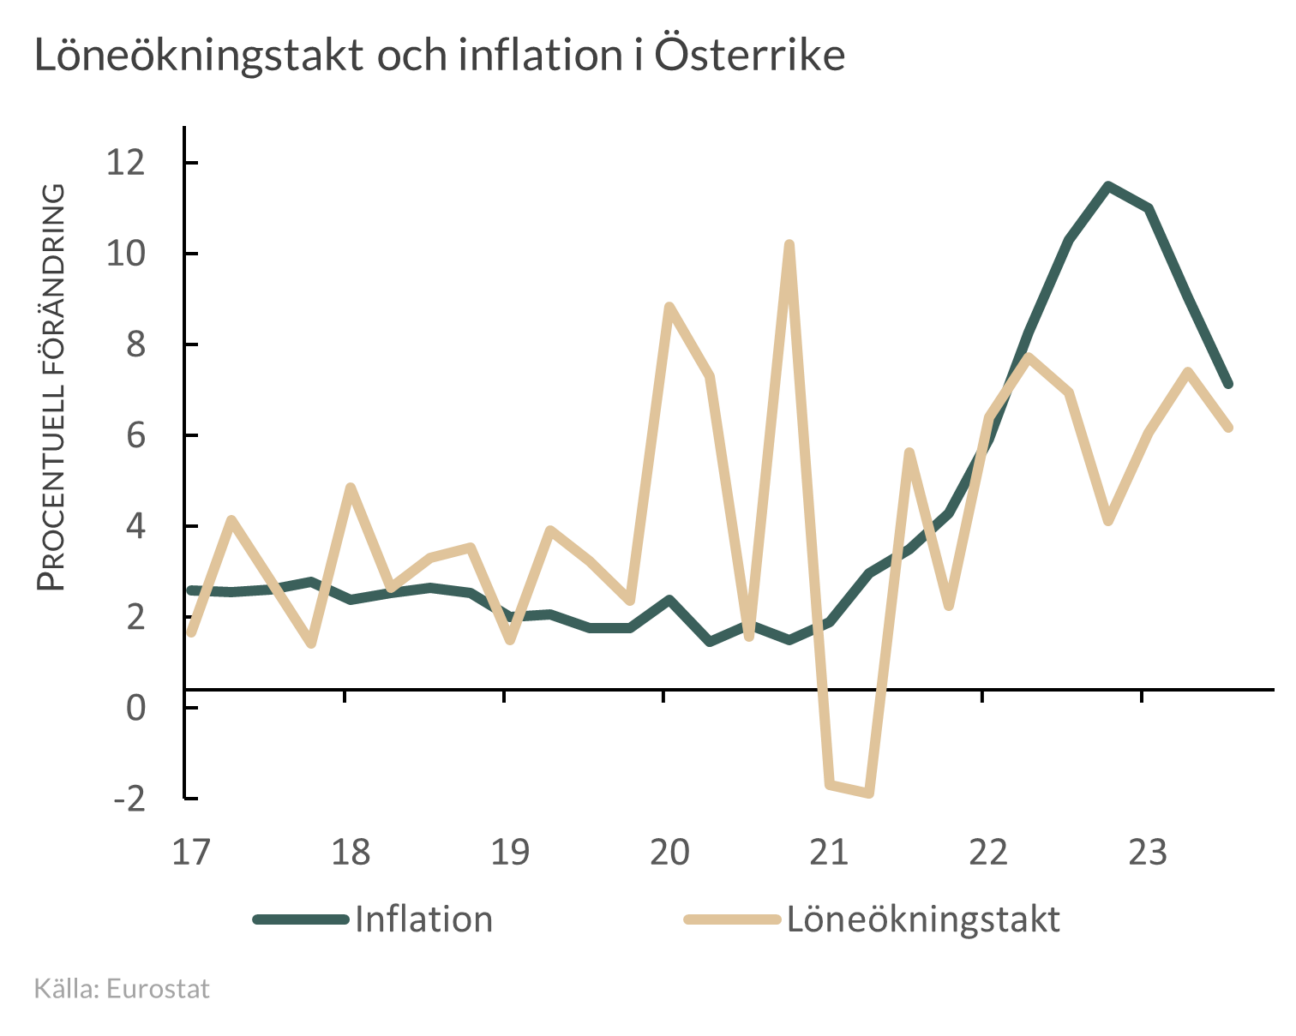 Löne- och inflationsutveckling i Österrike 2017-2023